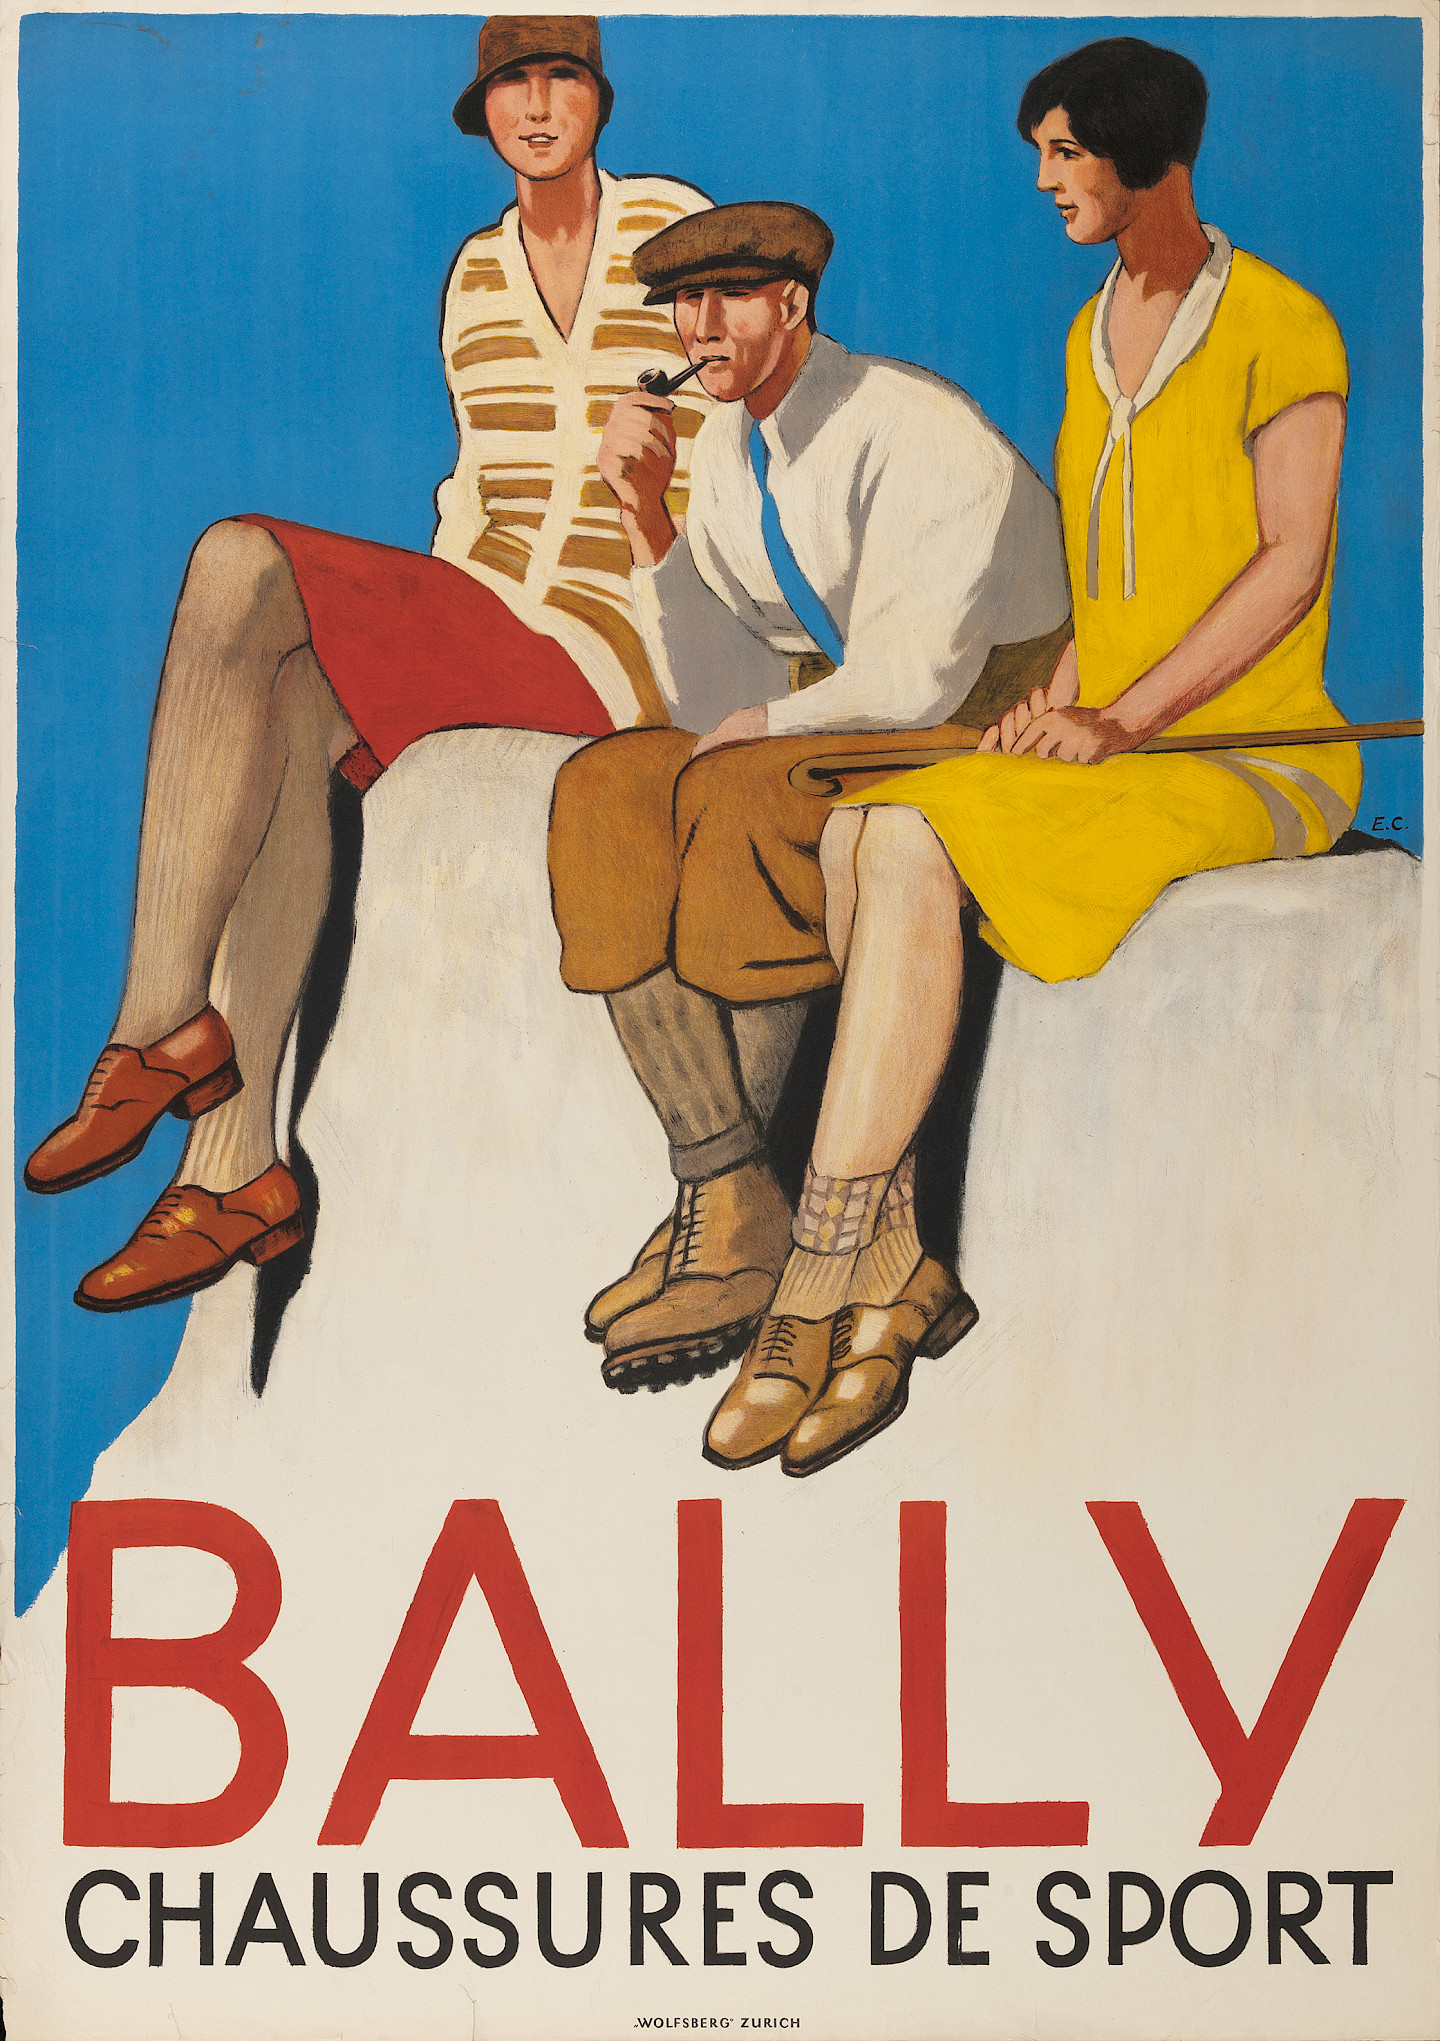 Emil Cardinaux, Bally Chaussures de Sport, 1928, © Bally Schuhfabriken AG